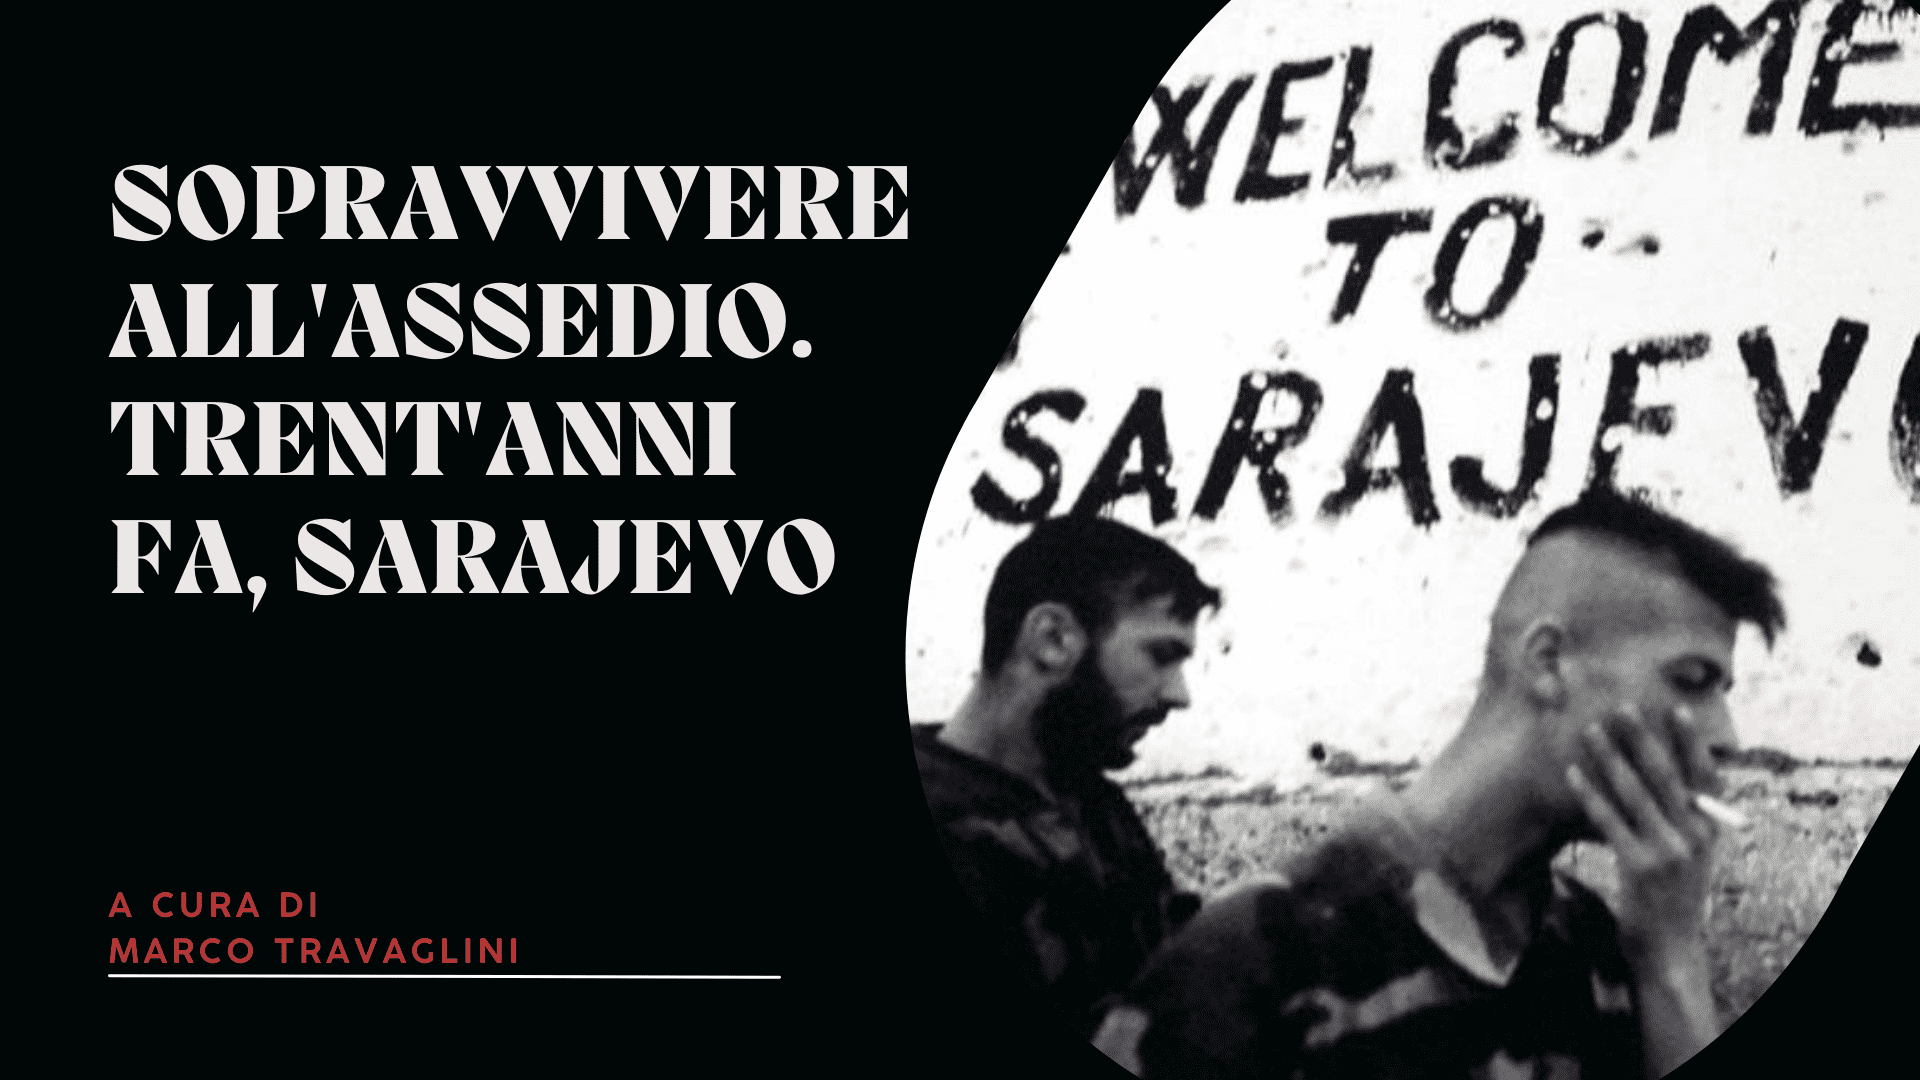 Sopravvivere all'assedio. Trent'anni fa, Sarajevo